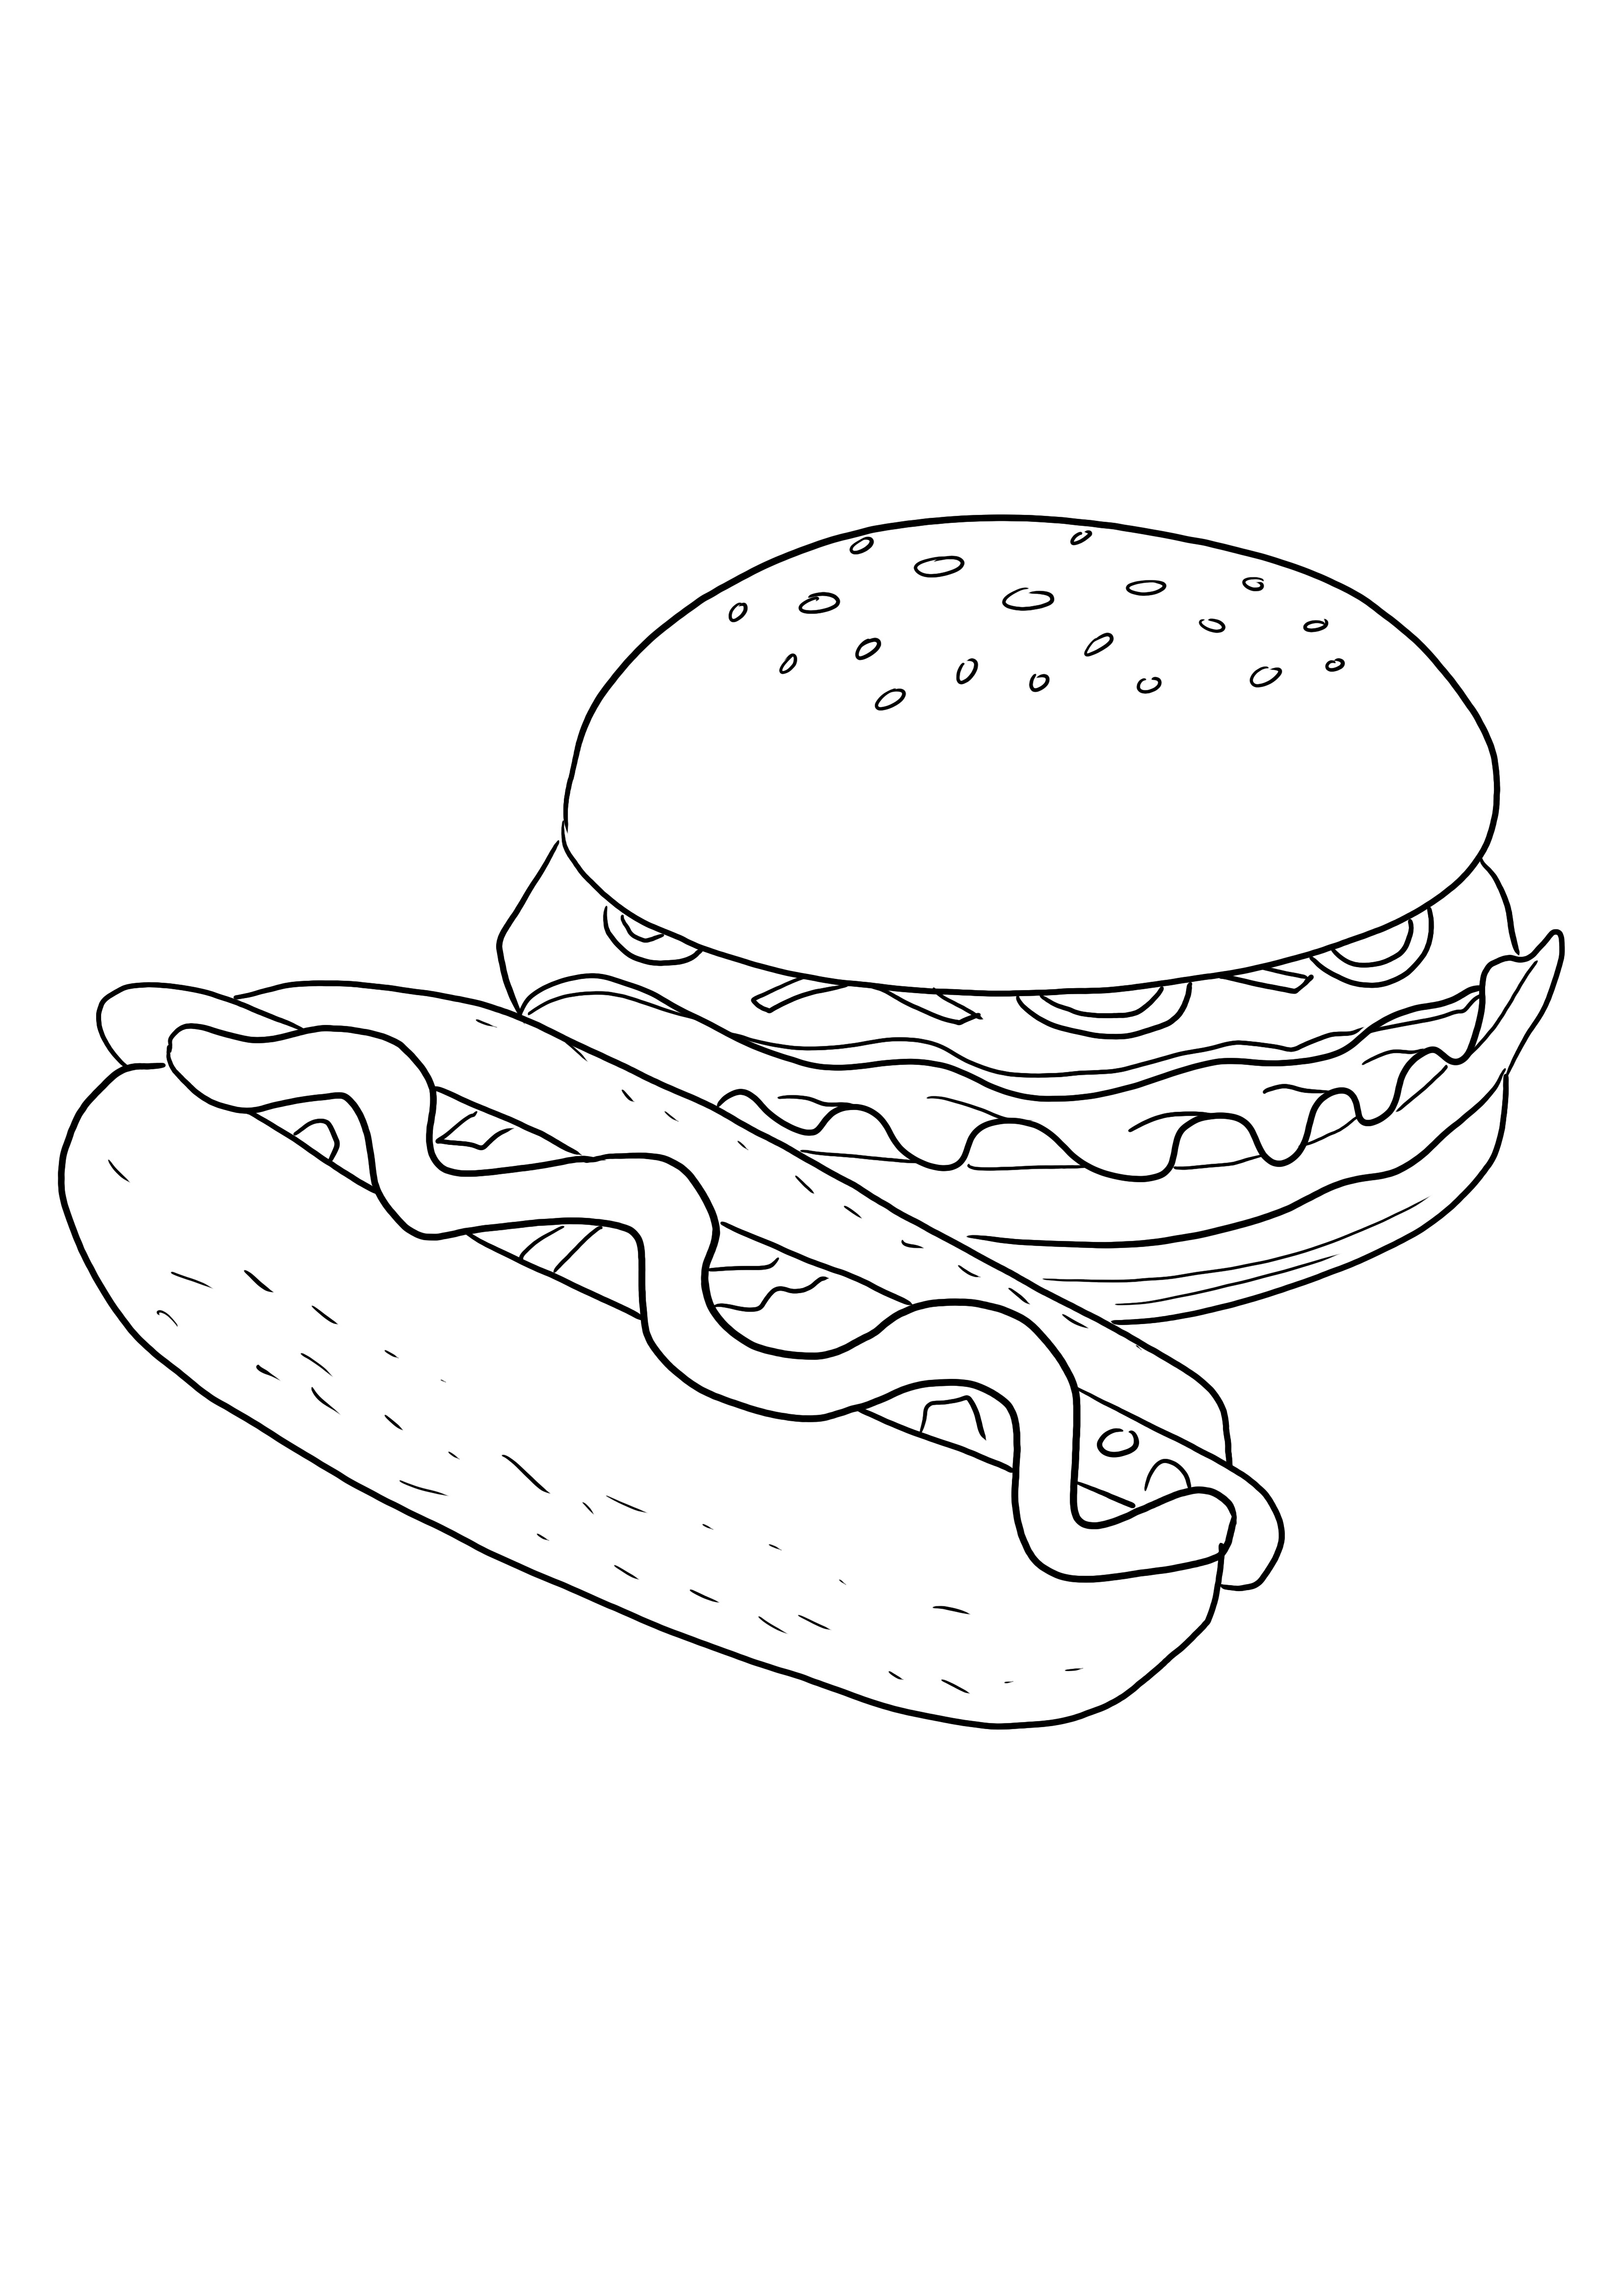 Pewarnaan hot dog dan hamburger yang mudah dan gratis untuk mencetak gambar untuk anak-anak